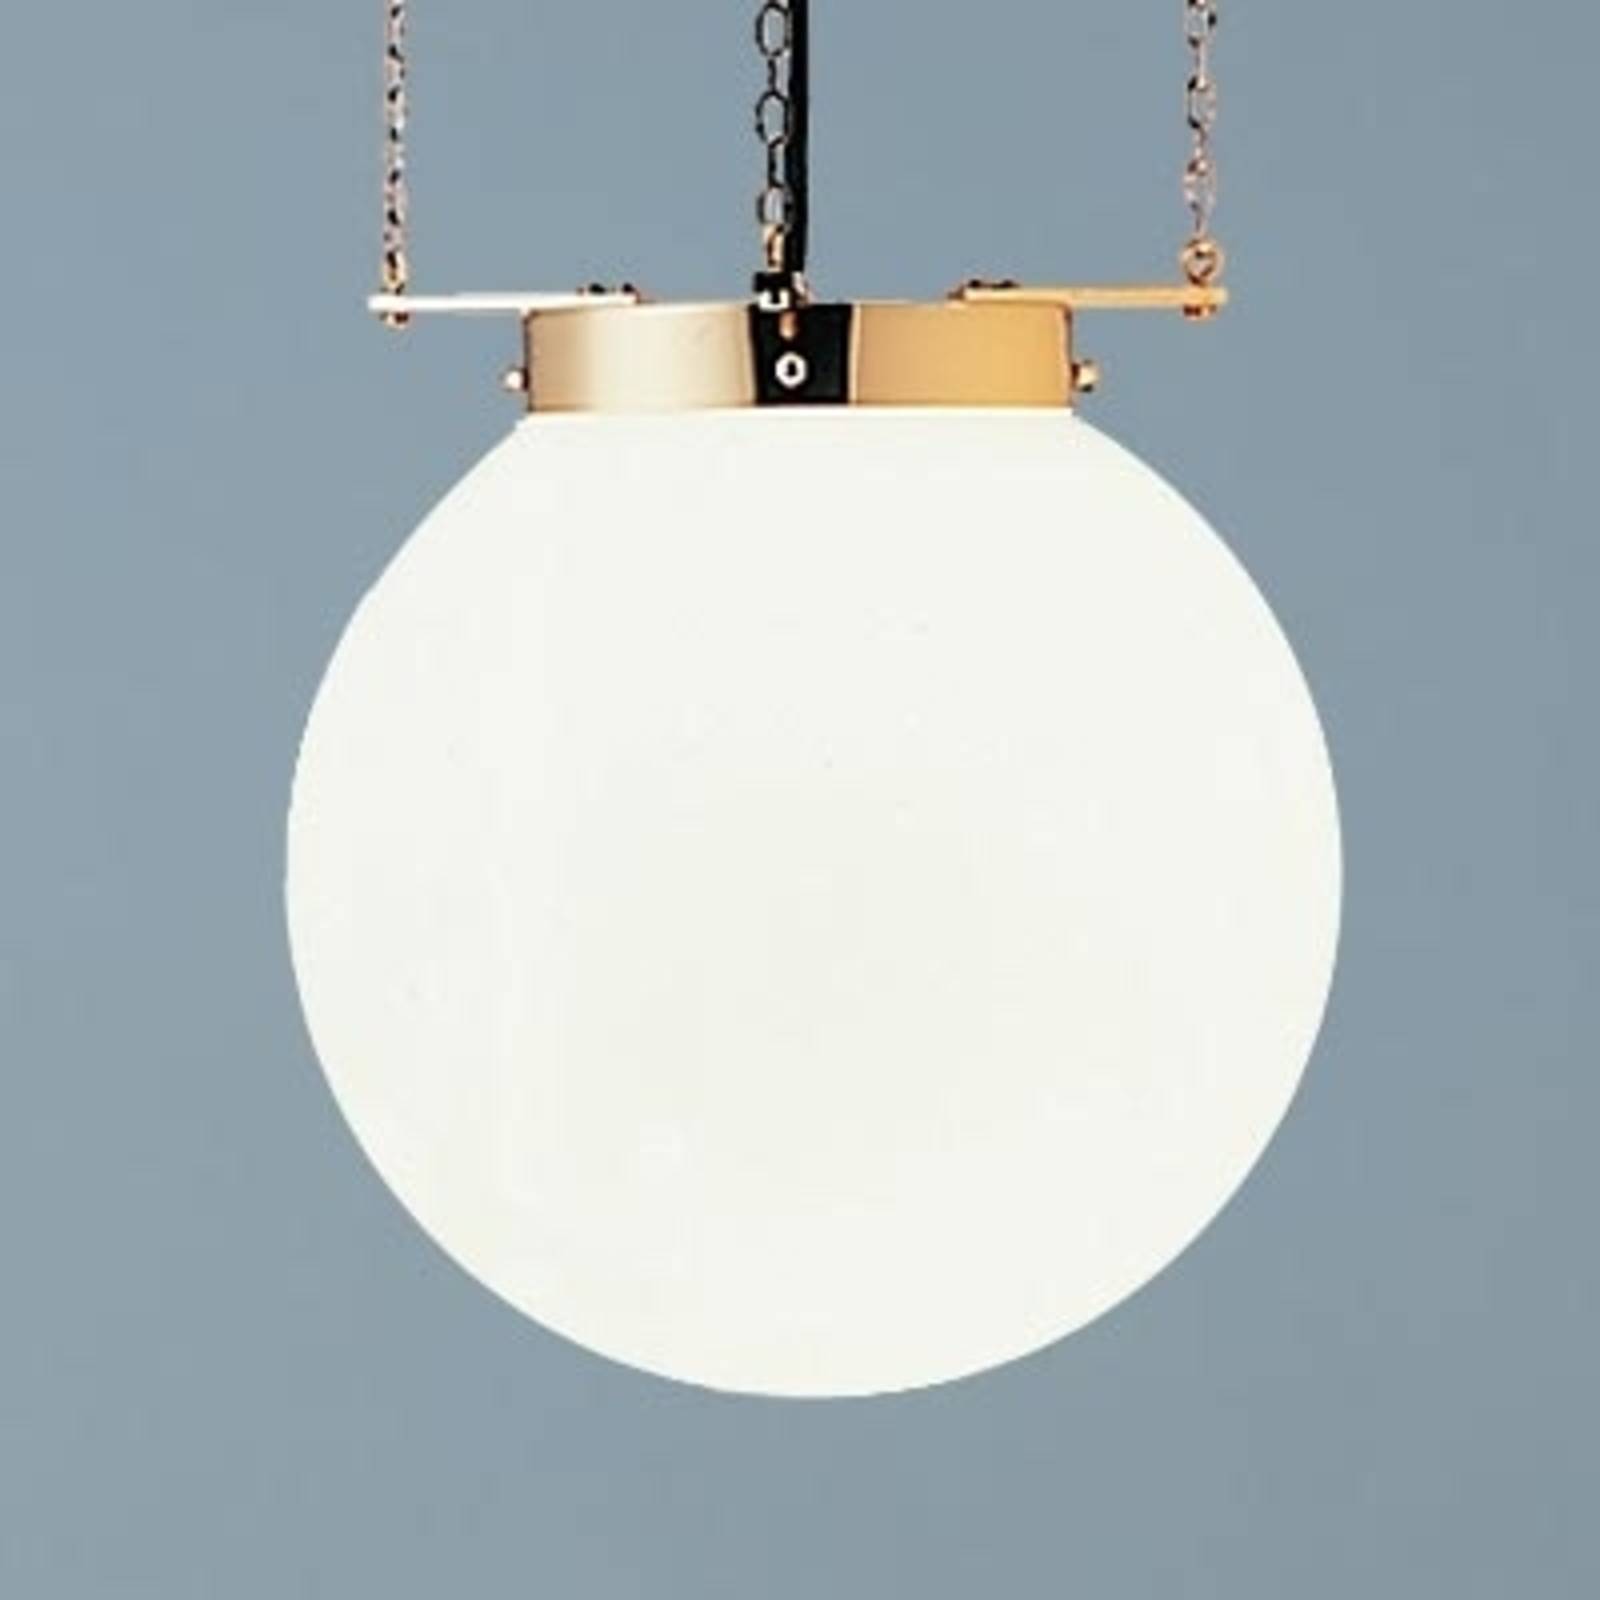 Lampa wisząca w stylu Bauhaus mosiądz 35 cm